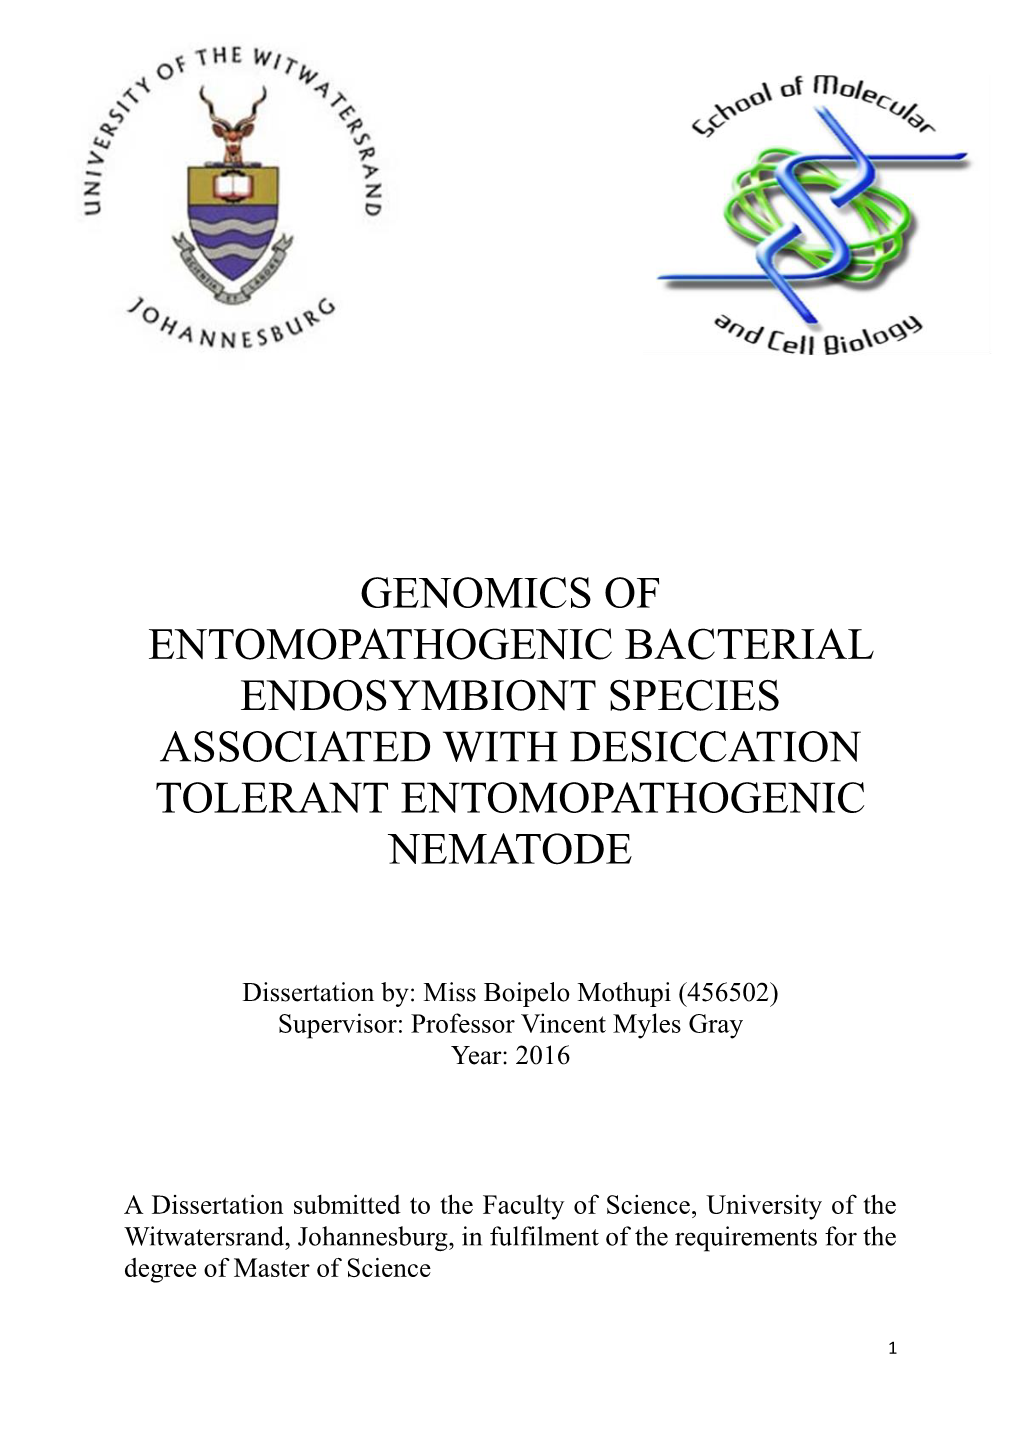 Isolation of Entomopathogenic Nematodes